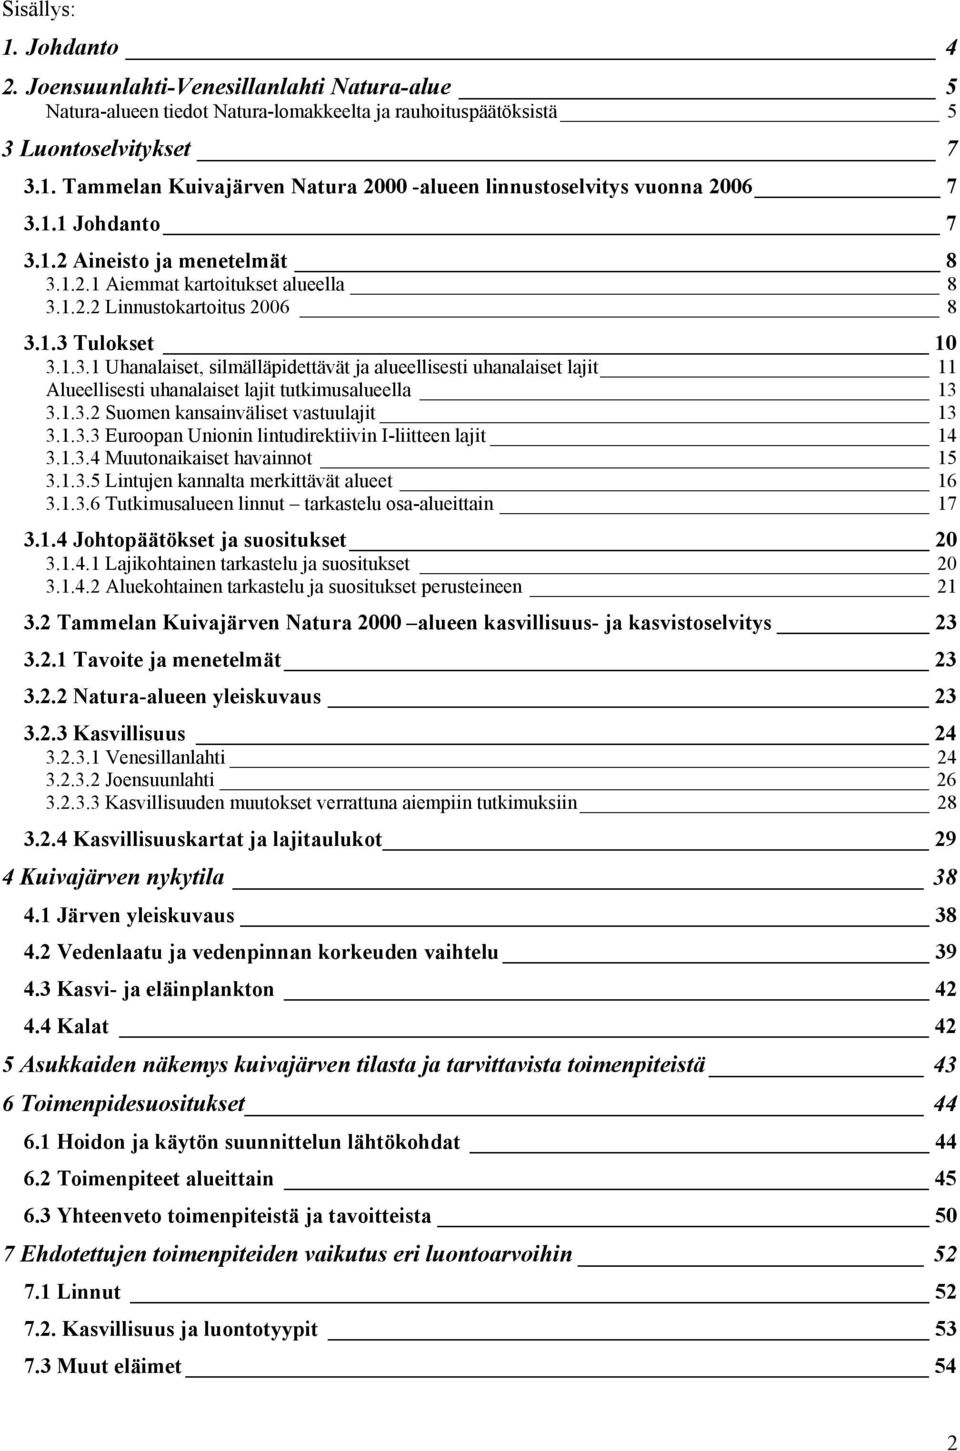 1.3.2 Suomen kansainväliset vastuulajit 13 3.1.3.3 Euroopan Unionin lintudirektiivin I-liitteen lajit 14 3.1.3.4 Muutonaikaiset havainnot 15 3.1.3.5 Lintujen kannalta merkittävät alueet 16 3.1.3.6 Tutkimusalueen linnut tarkastelu osa-alueittain 17 3.